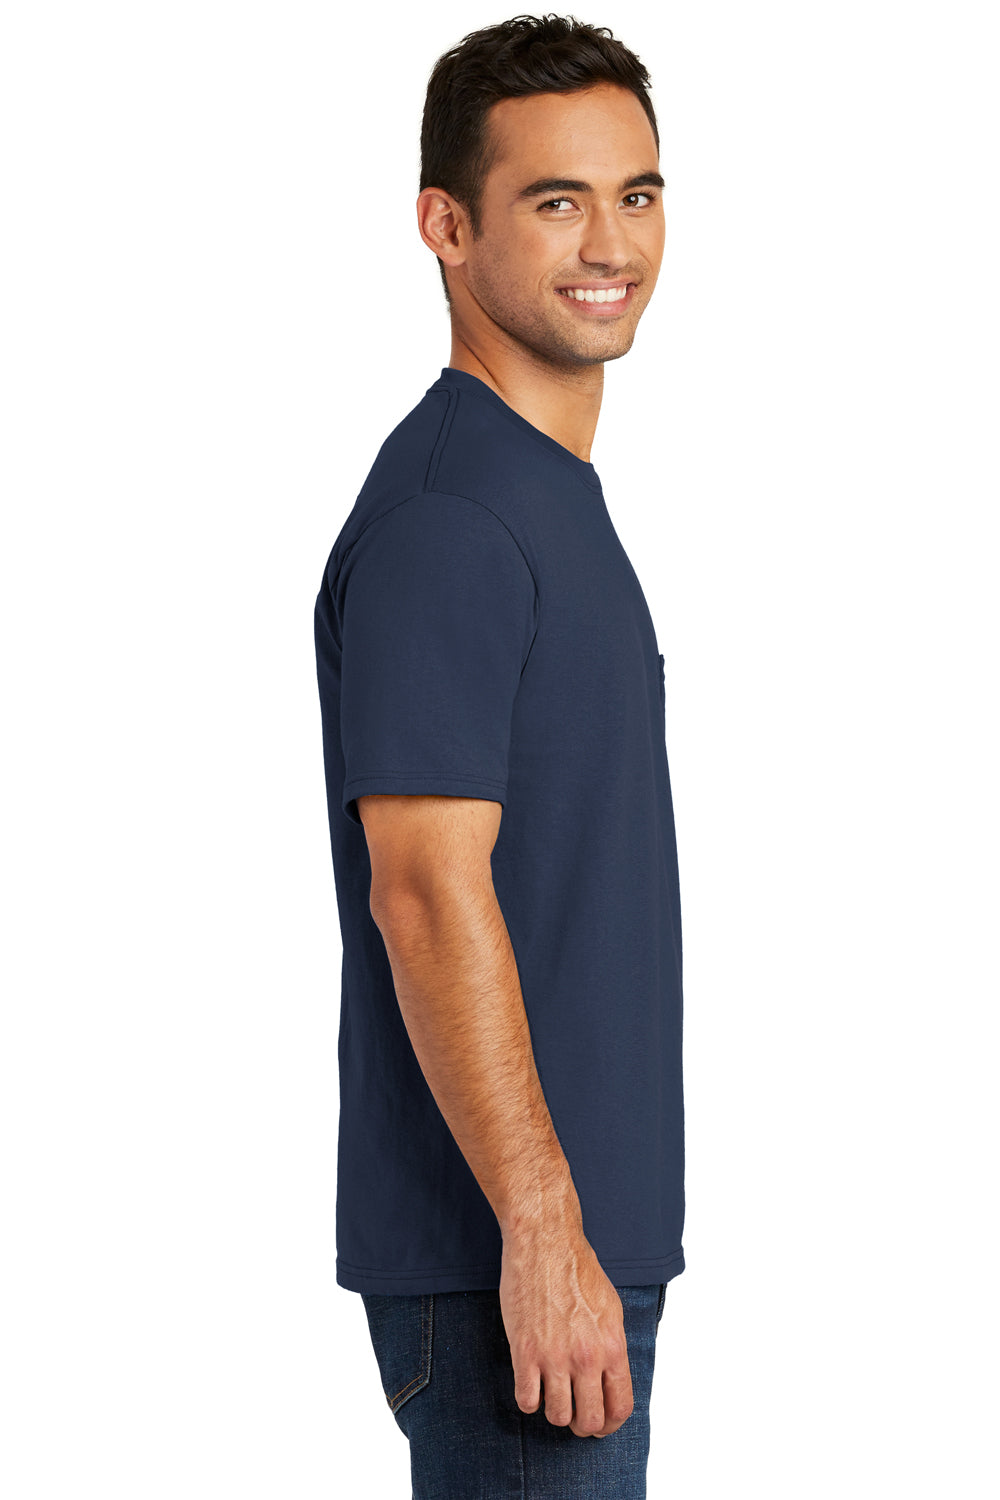 Port & Company USA100P Mens USA Made Short Sleeve Crewneck T-Shirt w/ Pocket Navy Blue Side